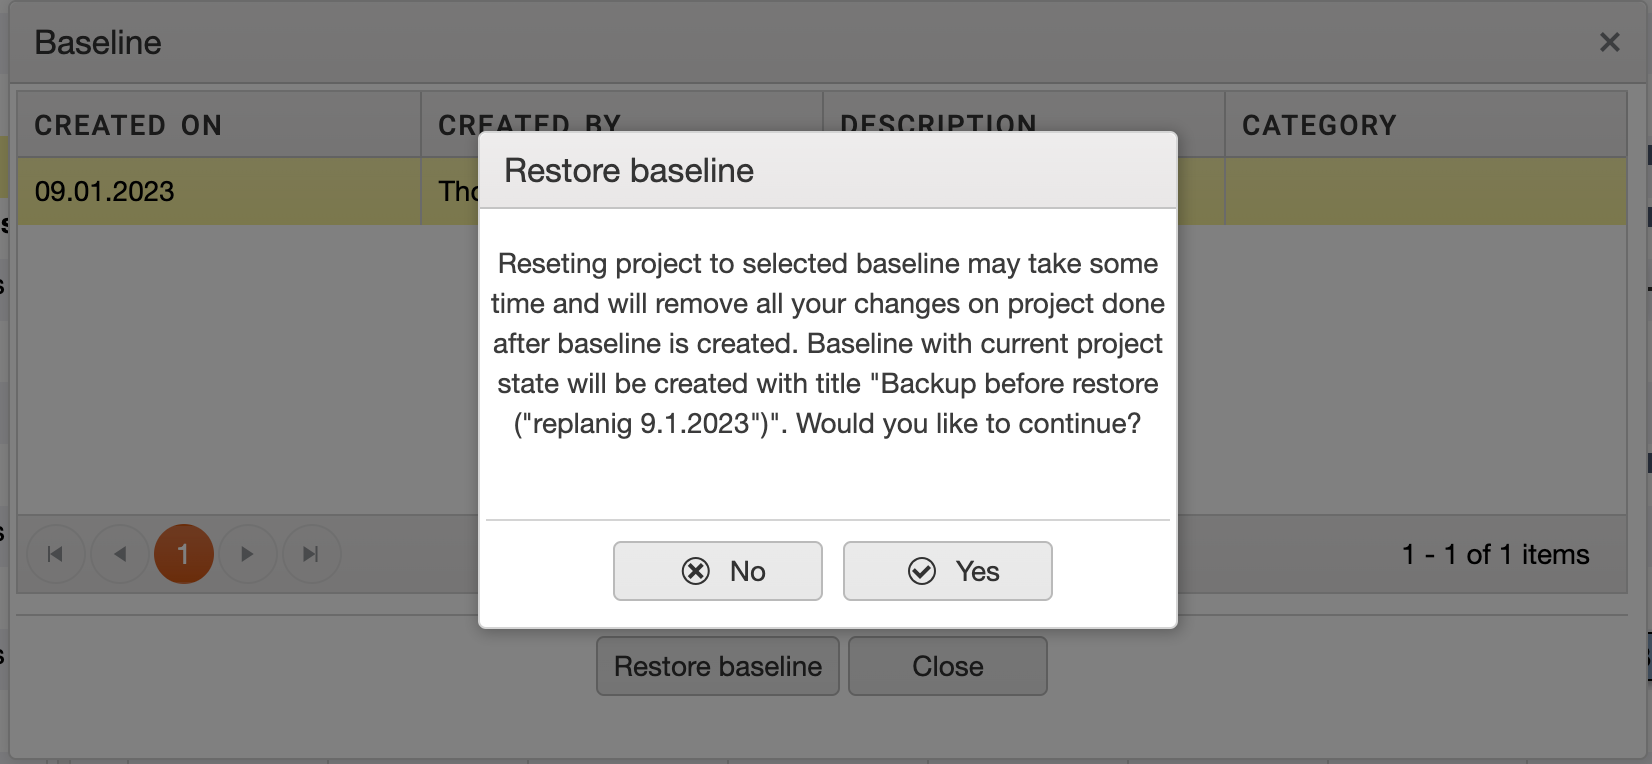 baseline_restore